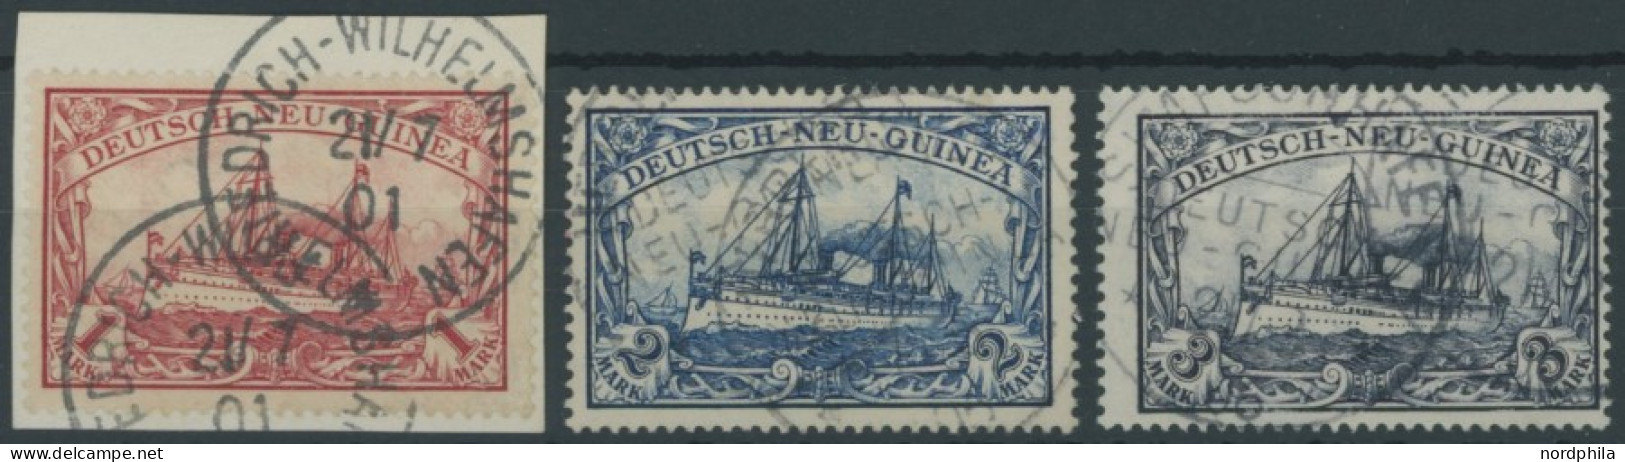 DEUTSCH-NEUGUINEA 16-18 O, 1901, 1 -3 M. Kaiseryacht, 3 Pachtwerte, Mi. 350.- - Deutsch-Neuguinea